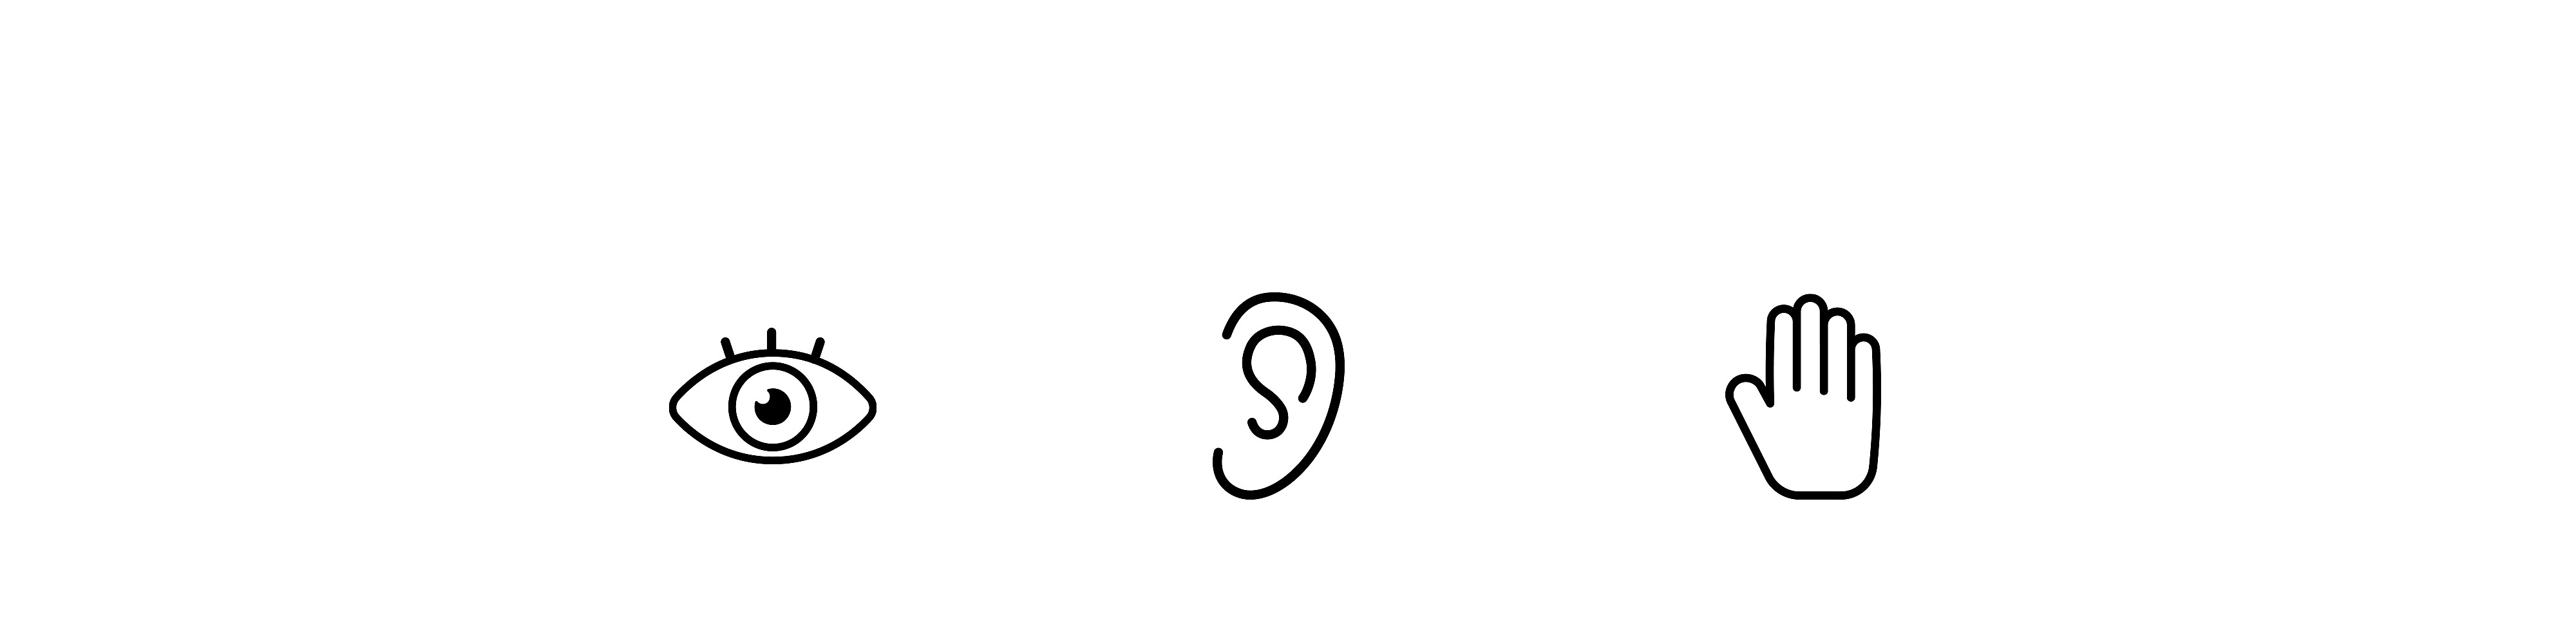 눈, 귀, 손의 간단한 아이콘 이미지